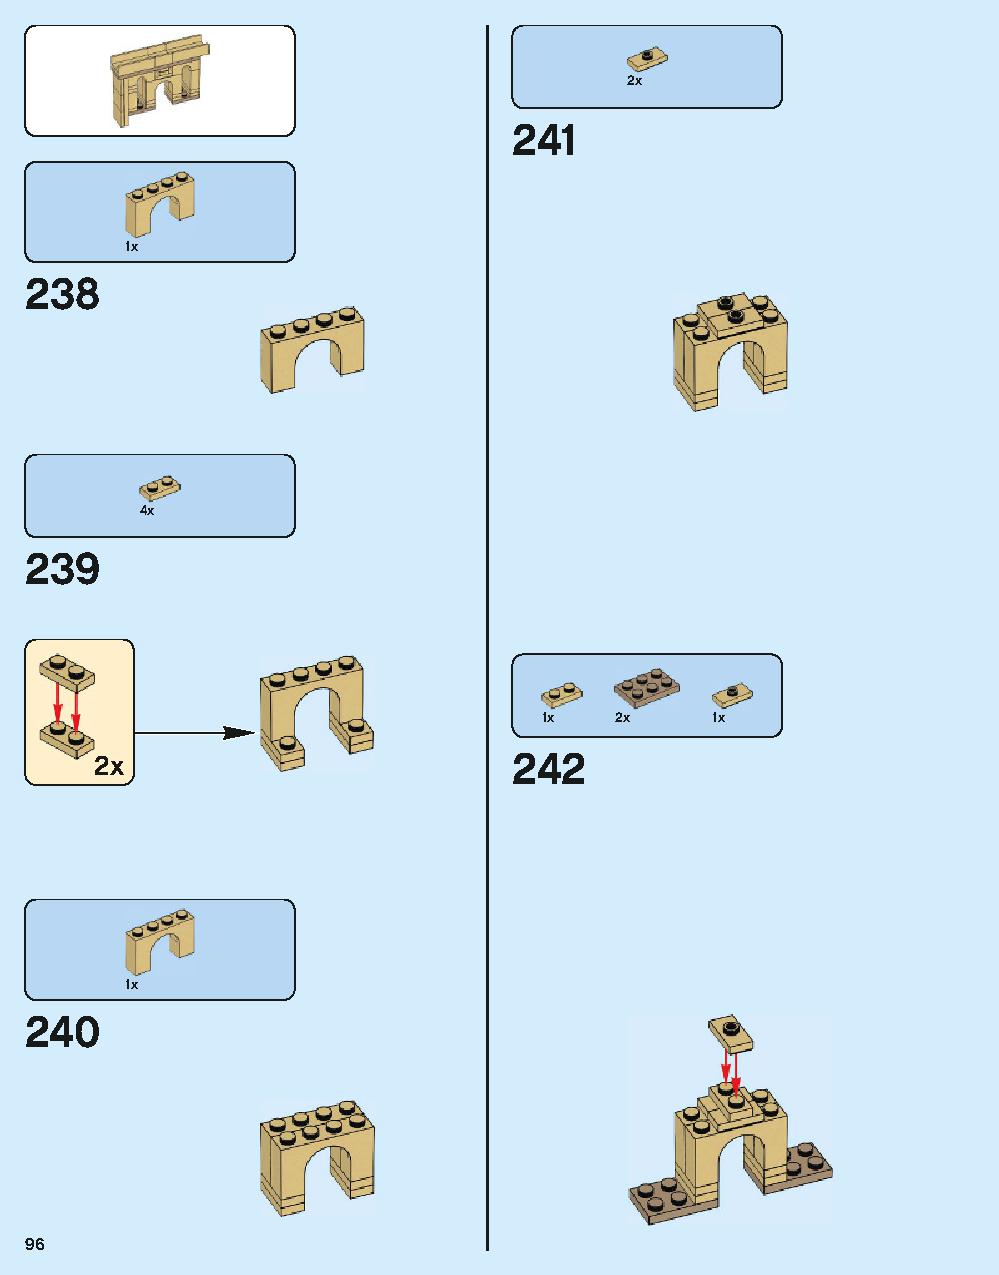 ホグワーツ城 71043 レゴの商品情報 レゴの説明書・組立方法 96 page